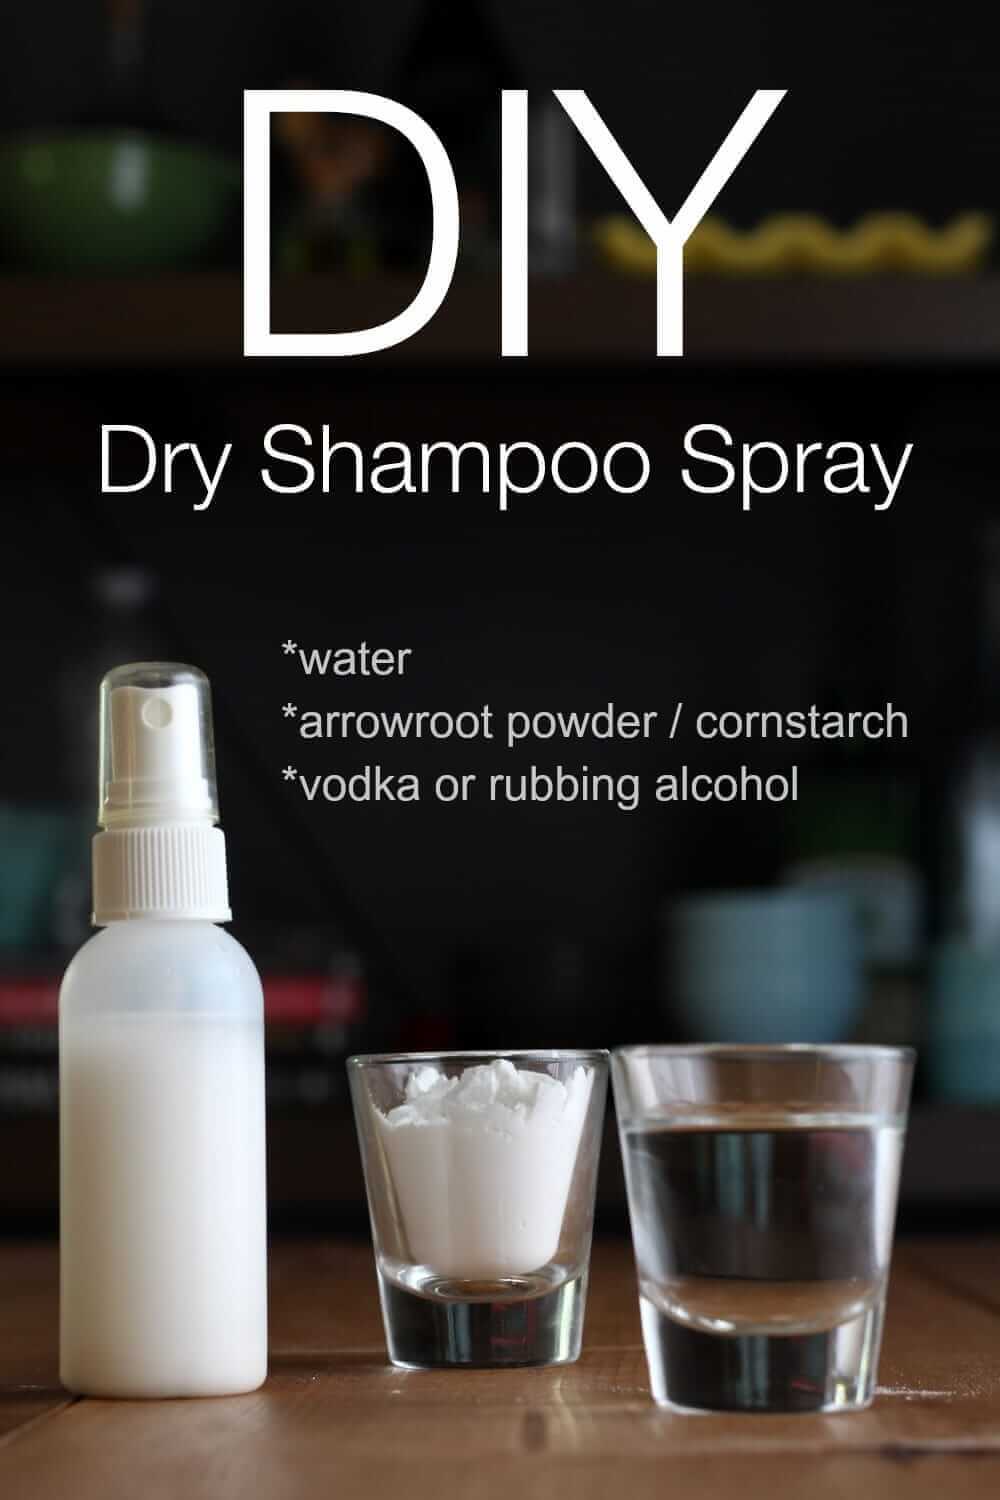 DIY Dry Shampoo Spray